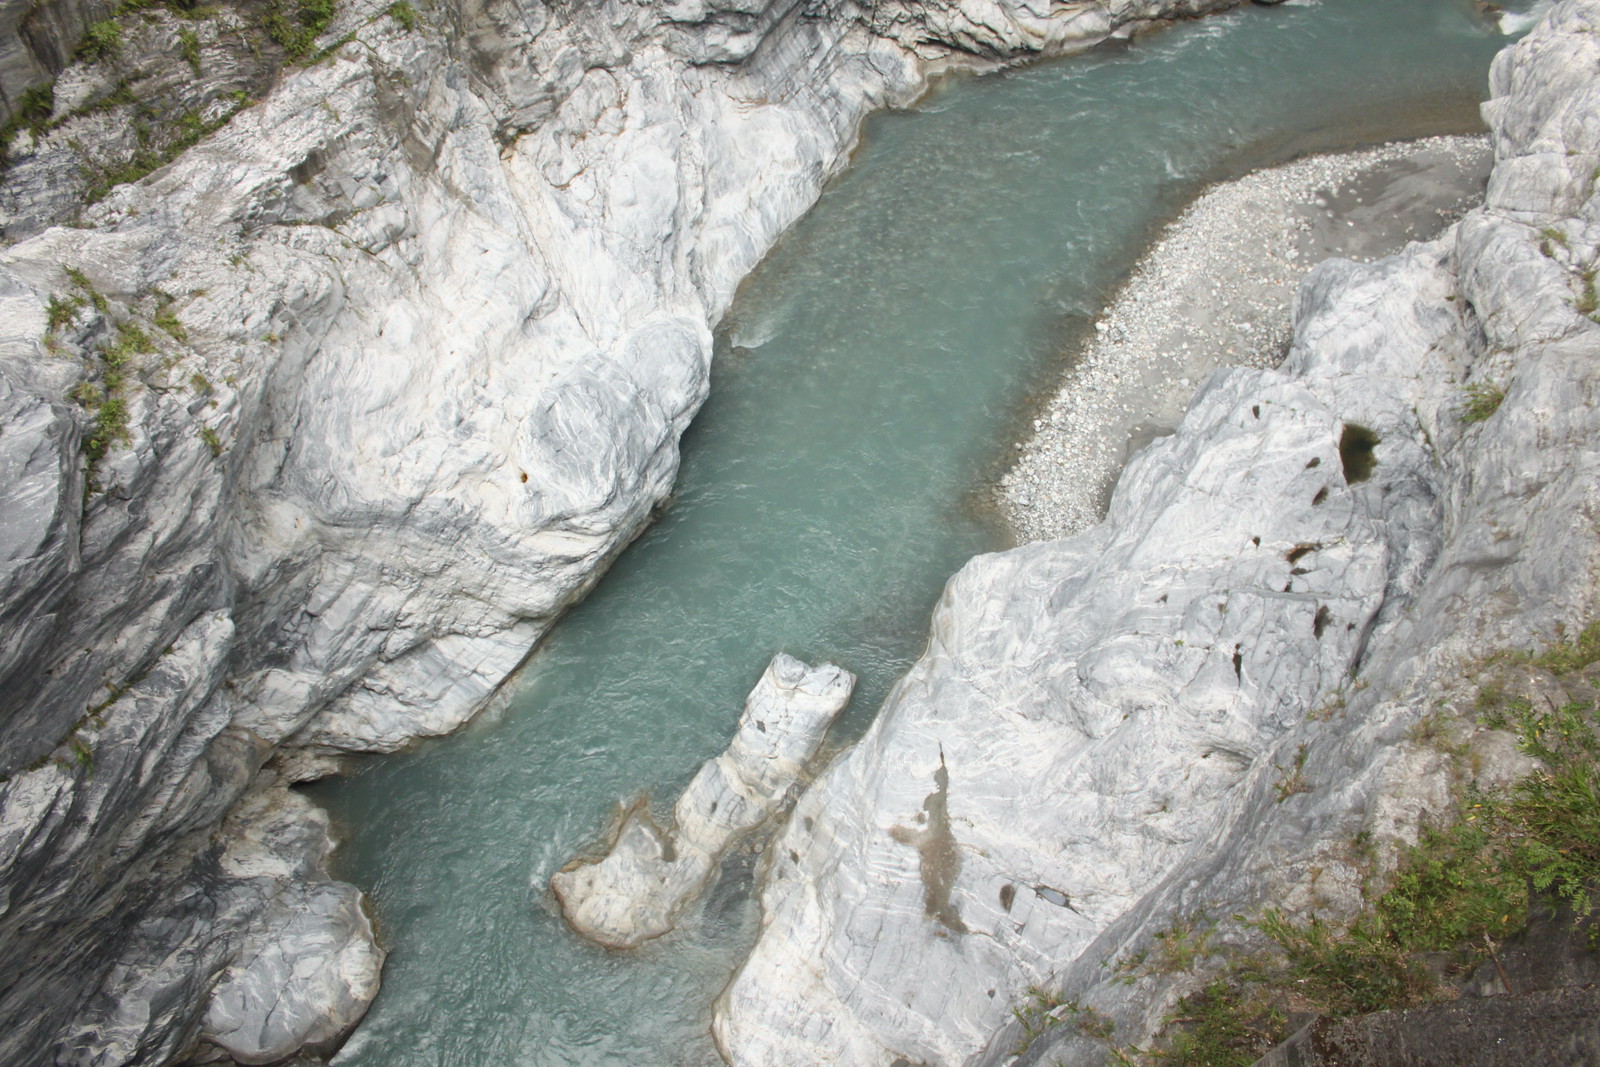 El río cruza desgastando la roca a lo largo de los siglos